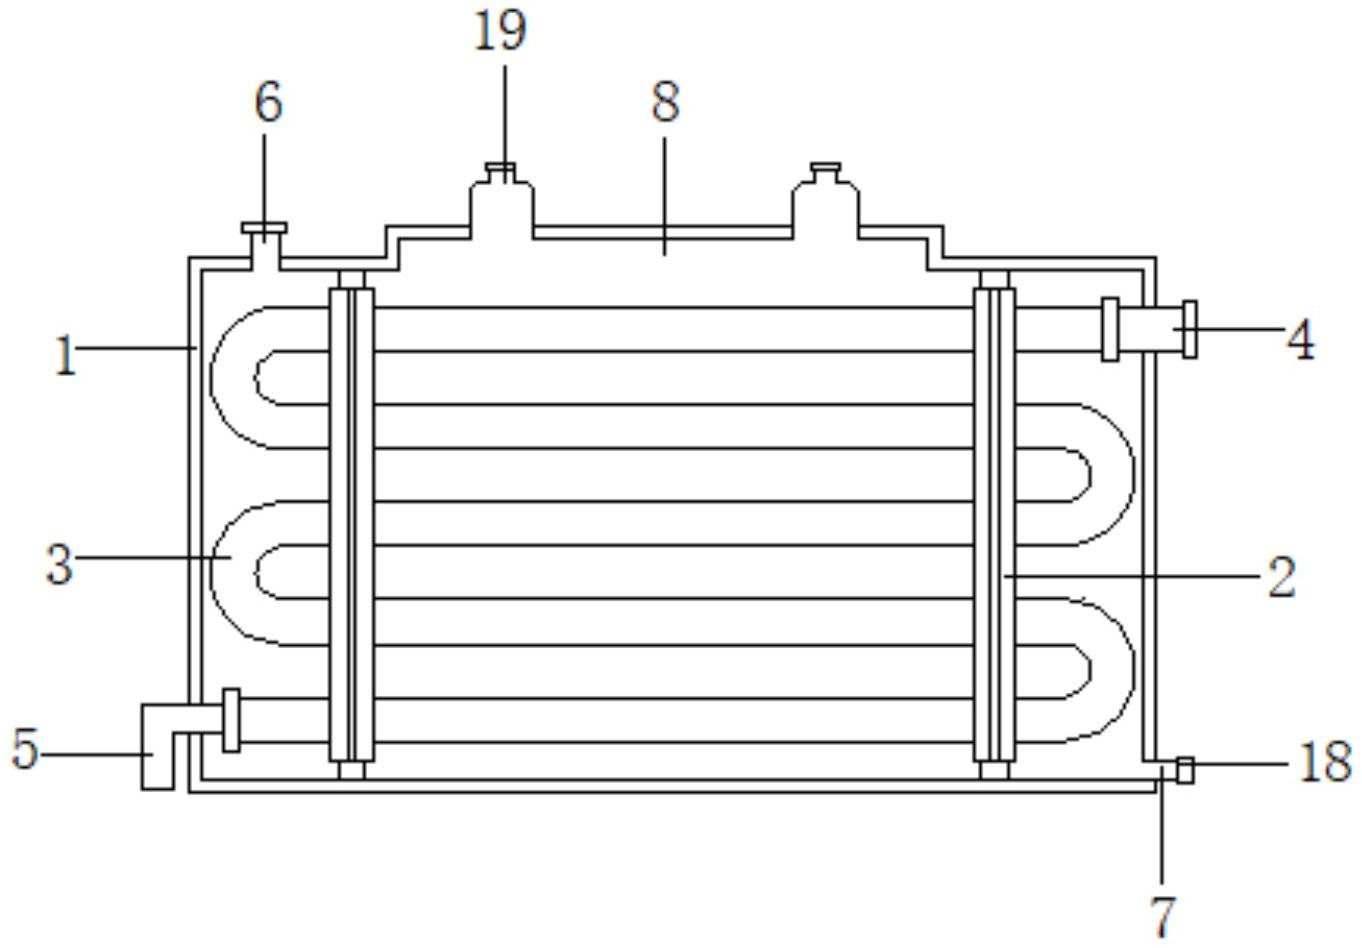 空调蒸发器结构图解图片